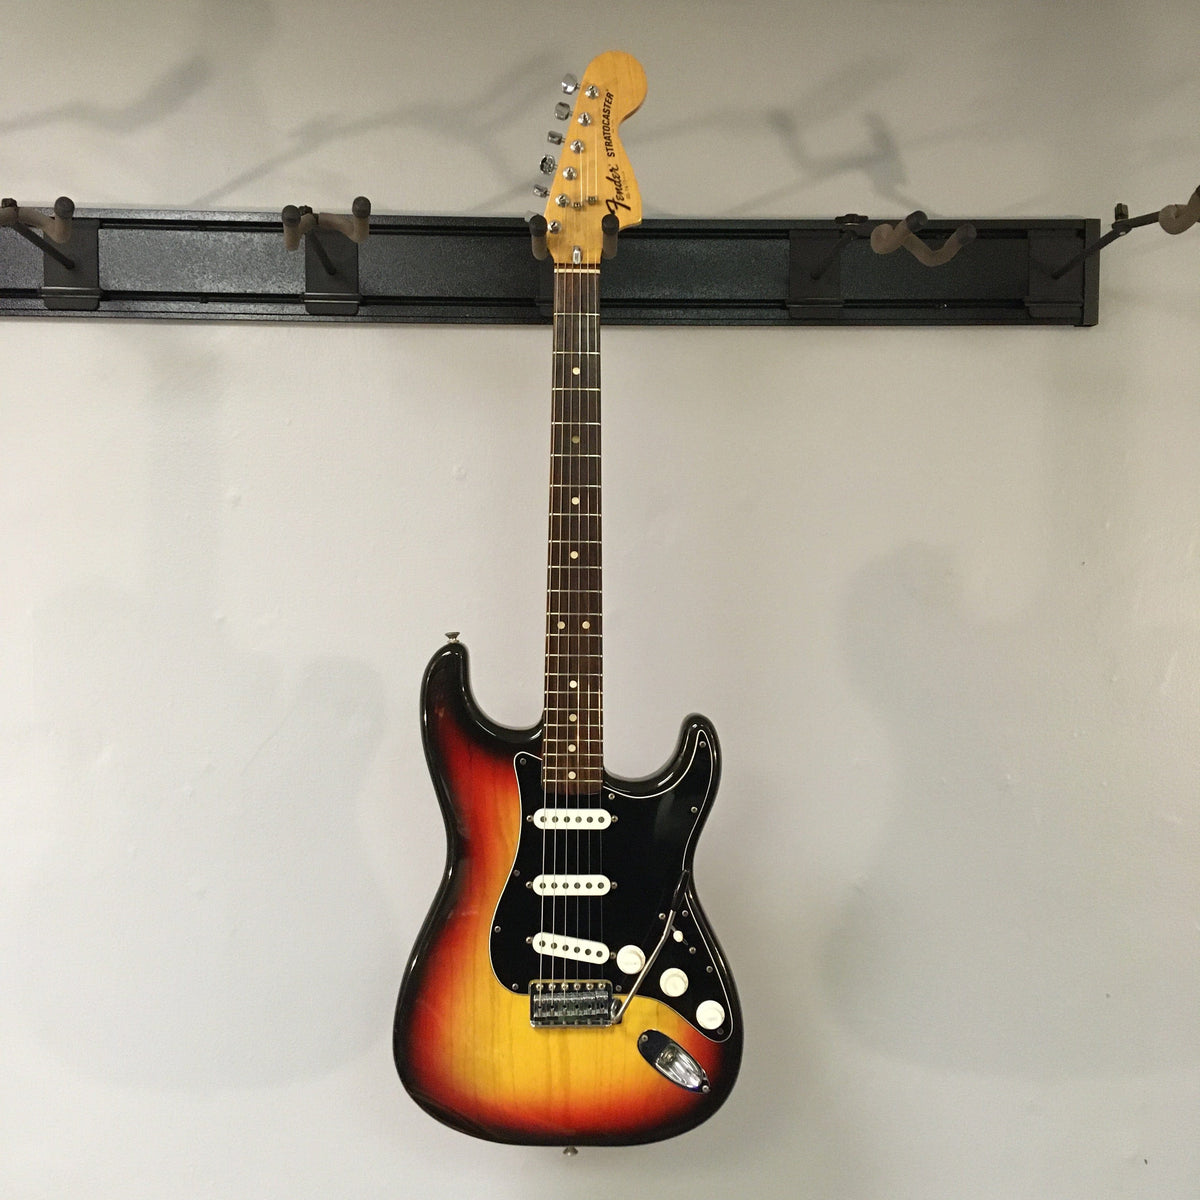 1976 Fender Strat Sunburst All Original w/Original Case...